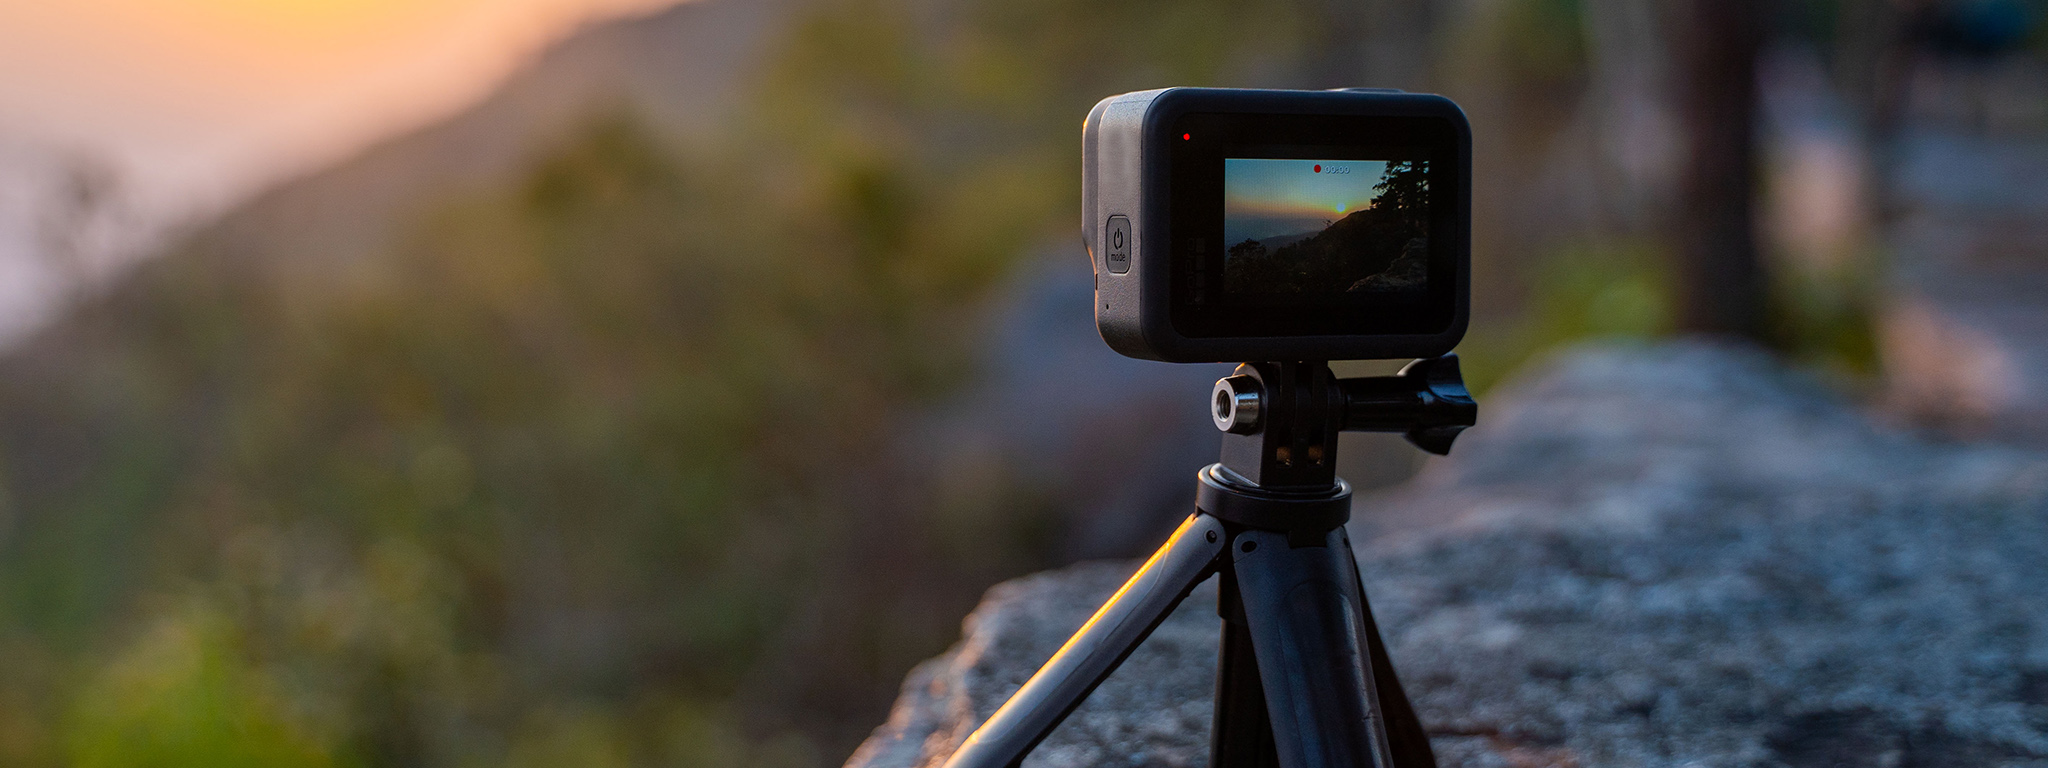 Cómo elegir el Almacenamiento para una cámara GoPro - Kingston Technology